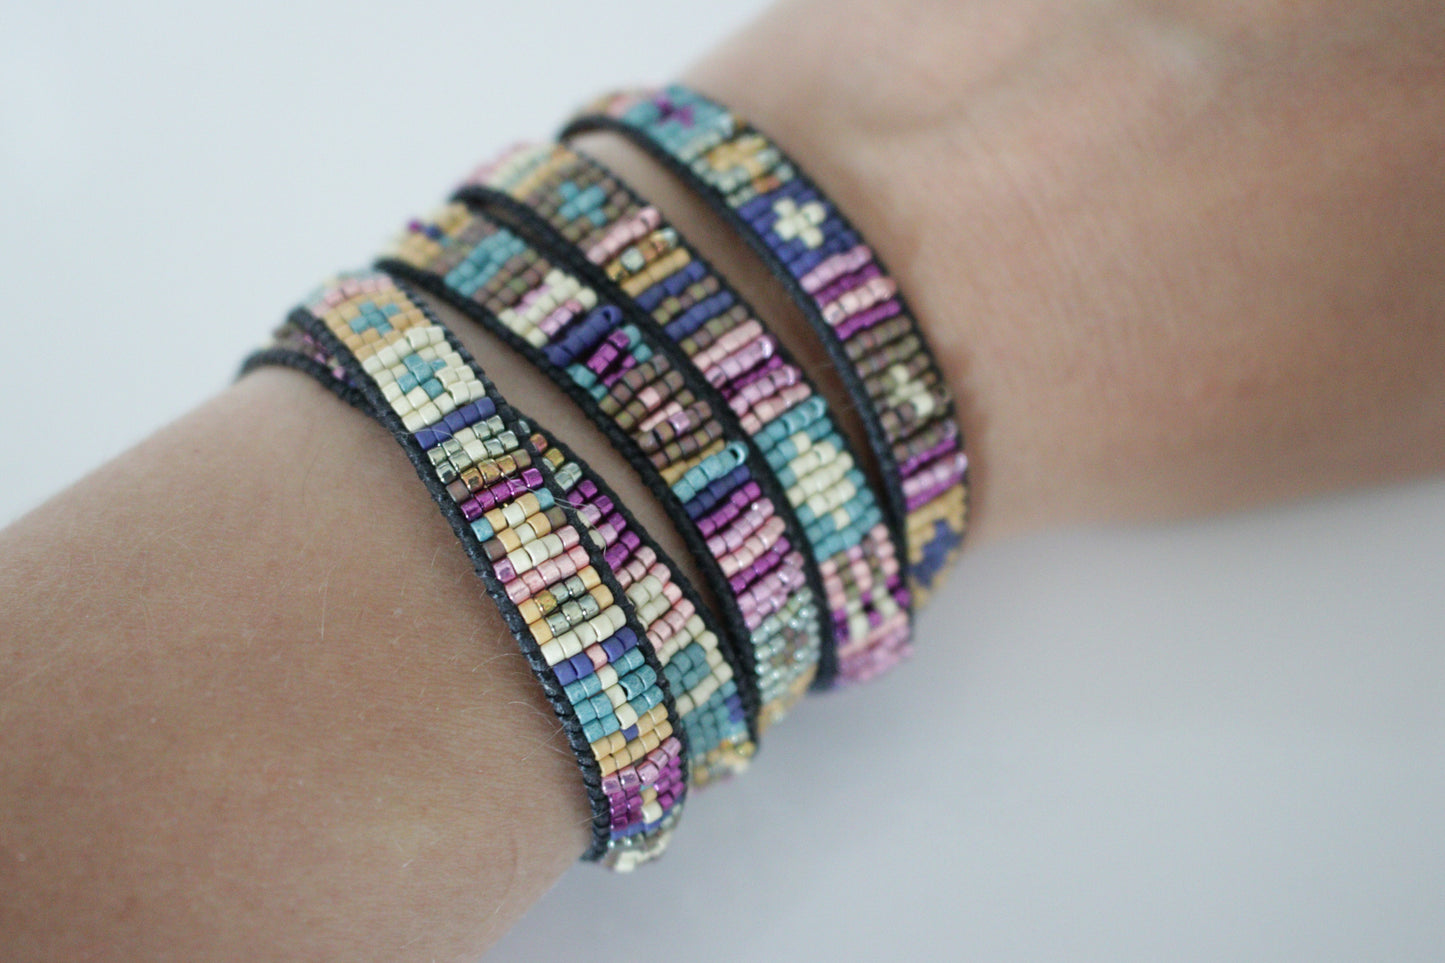 Yinkin Women's Multi Layer Wrap Bracelet